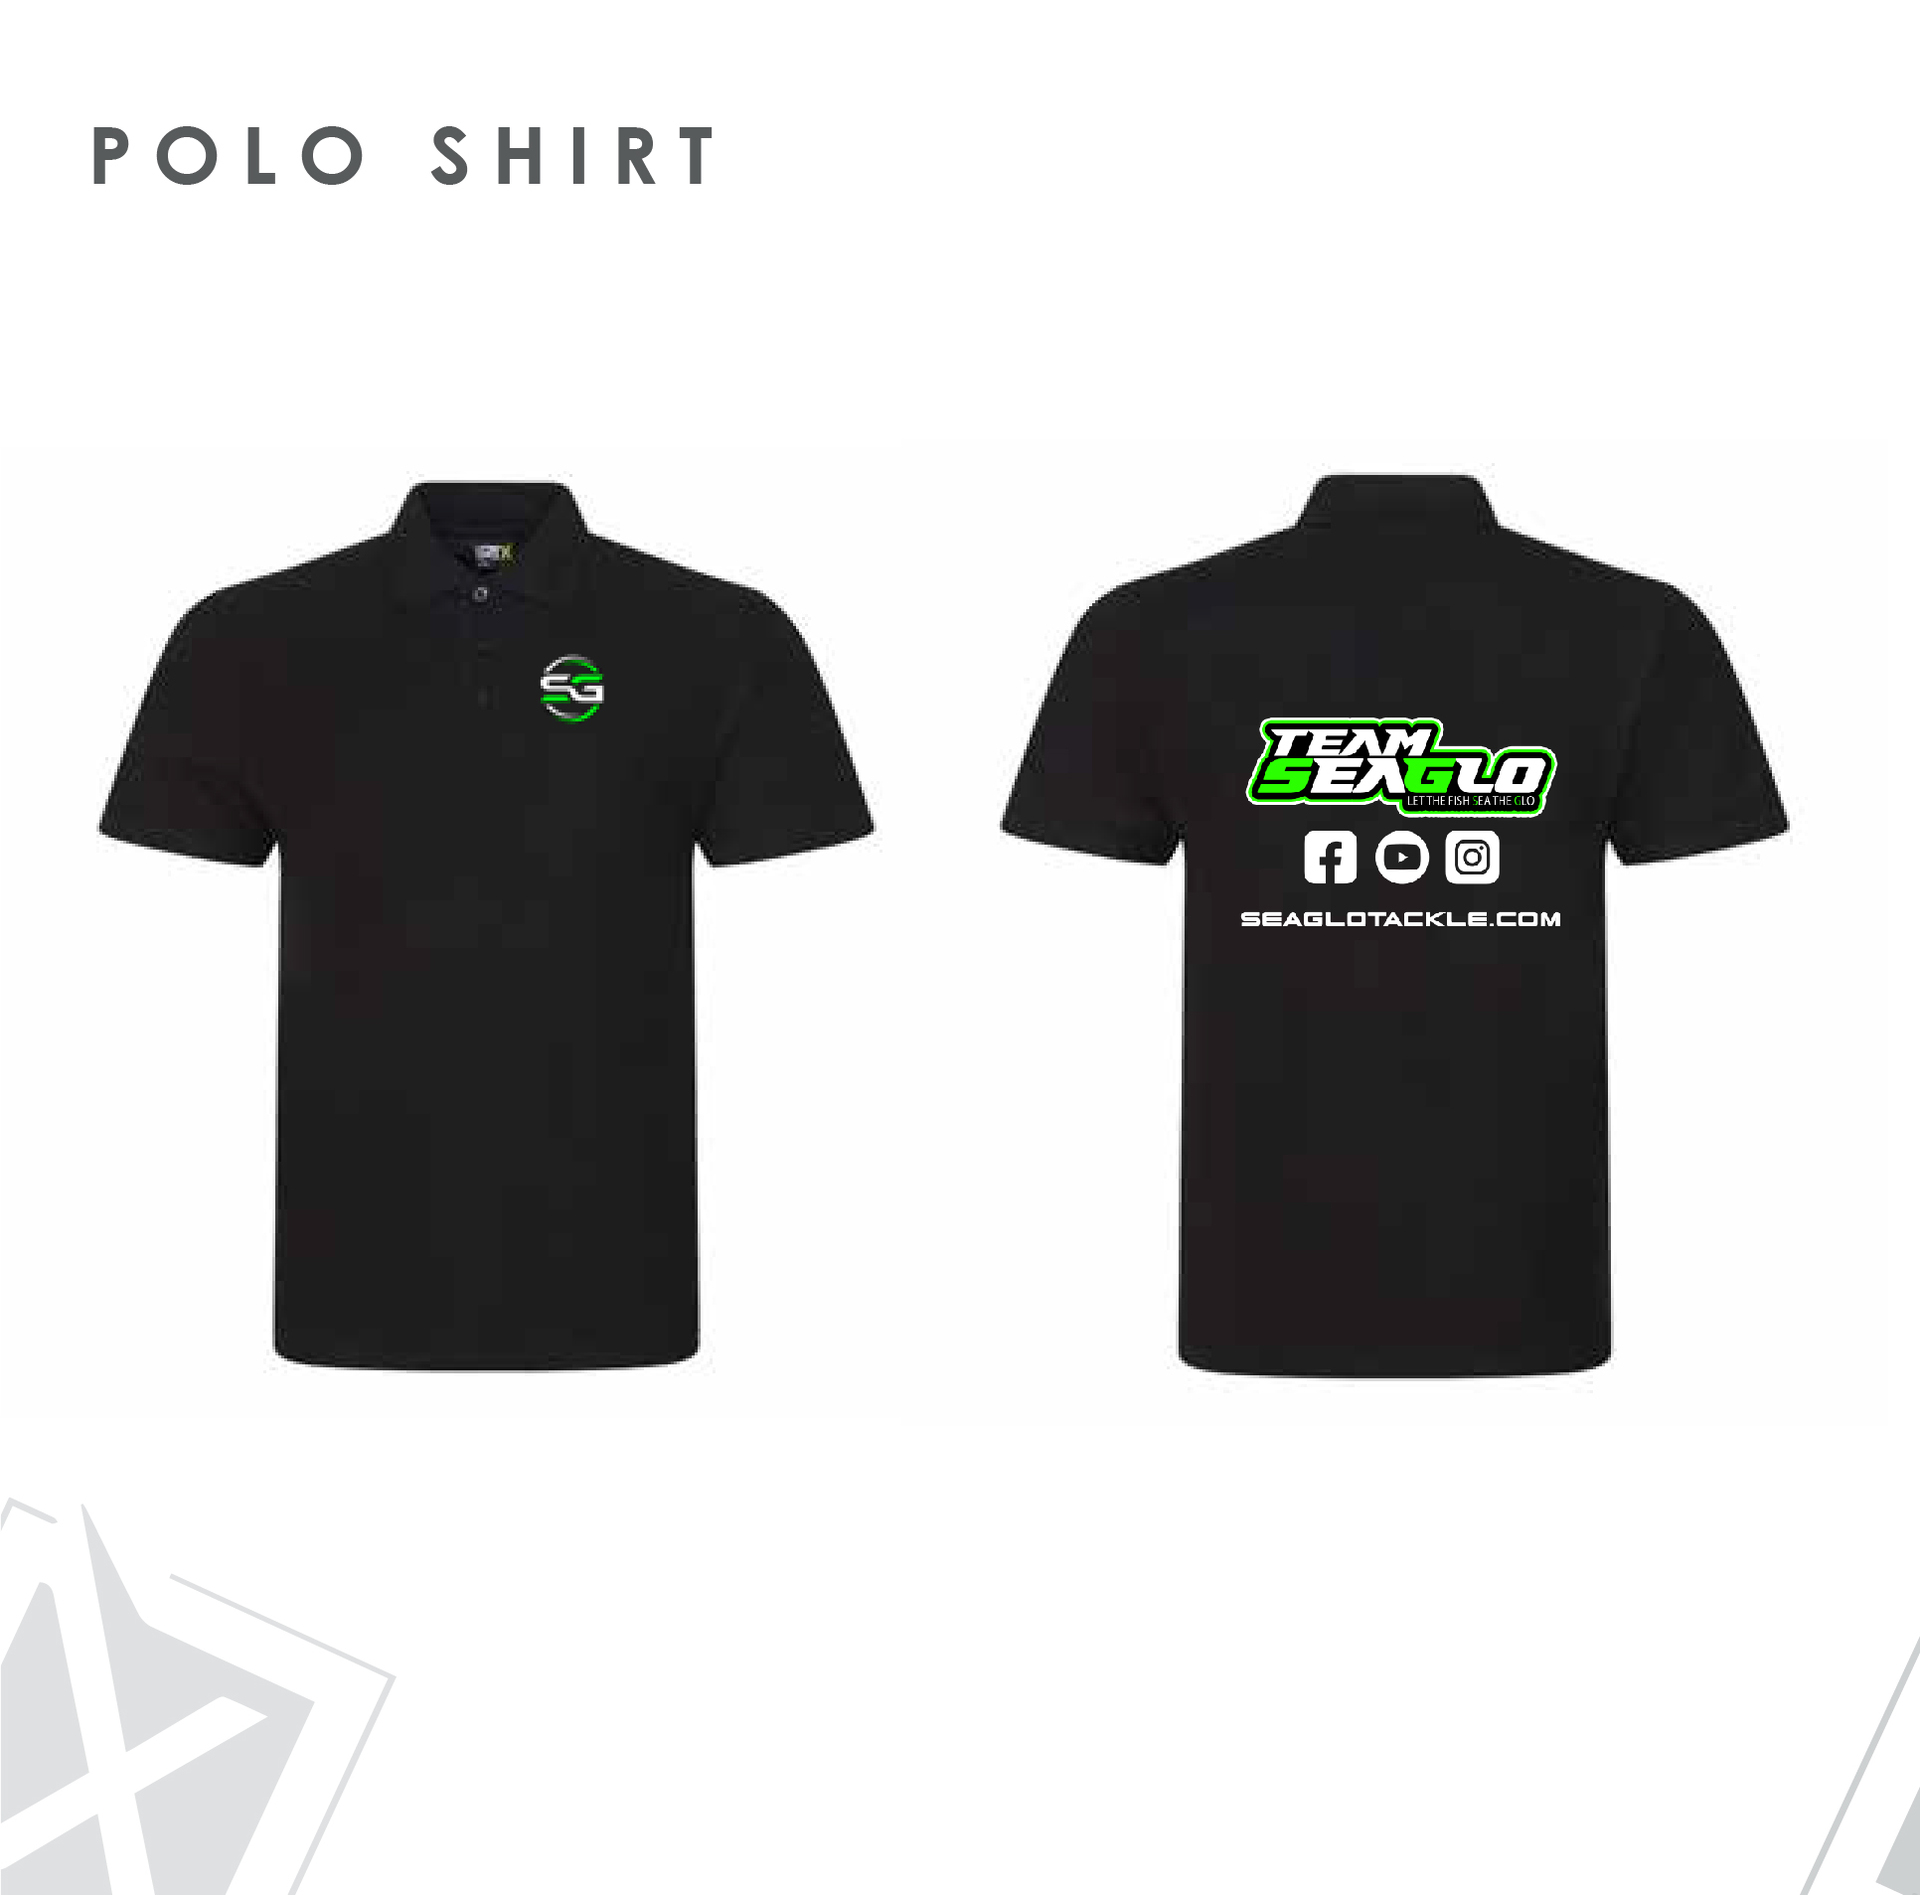 Seaglo Polo Shirt